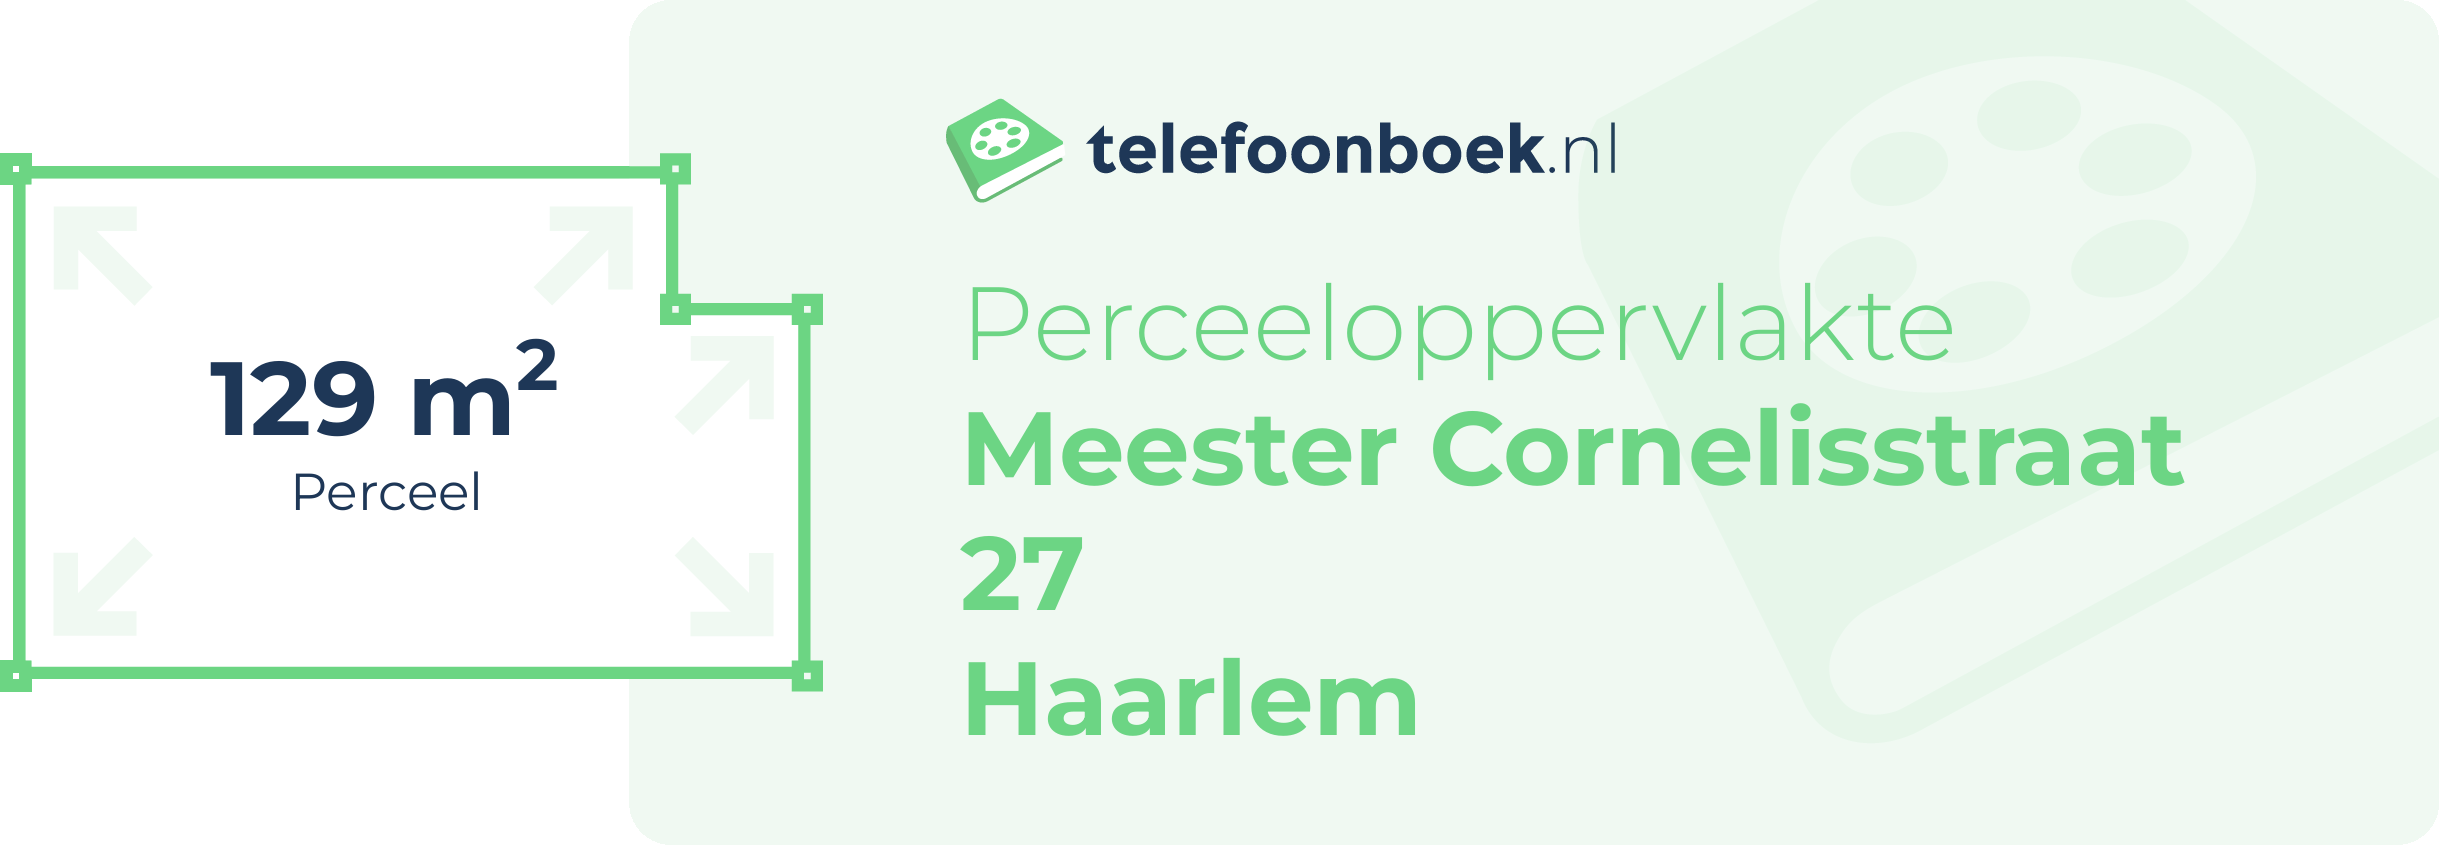 Perceeloppervlakte Meester Cornelisstraat 27 Haarlem